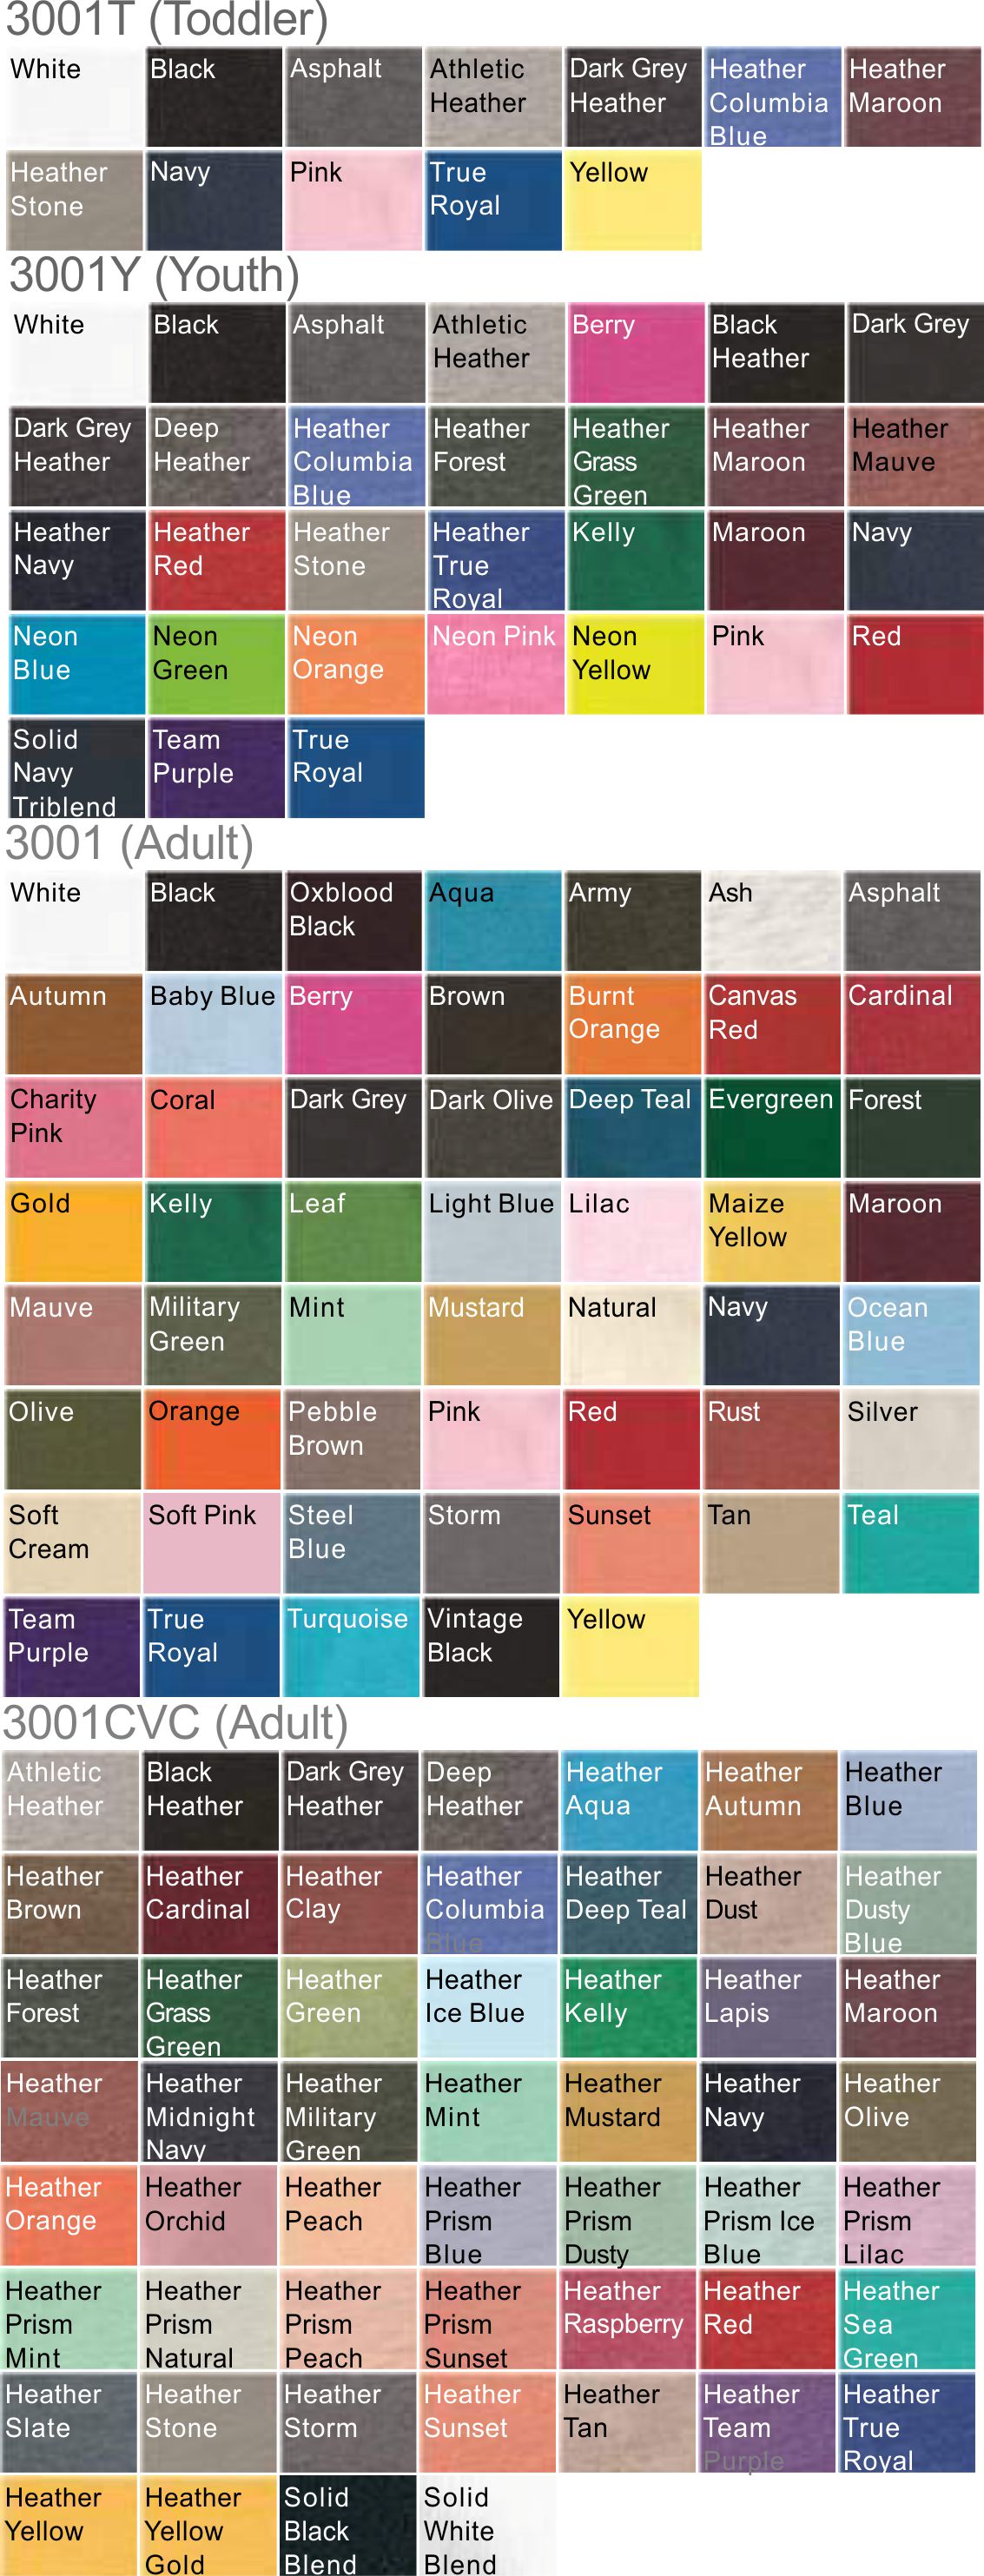 Bella Canvas Color Chart 3001